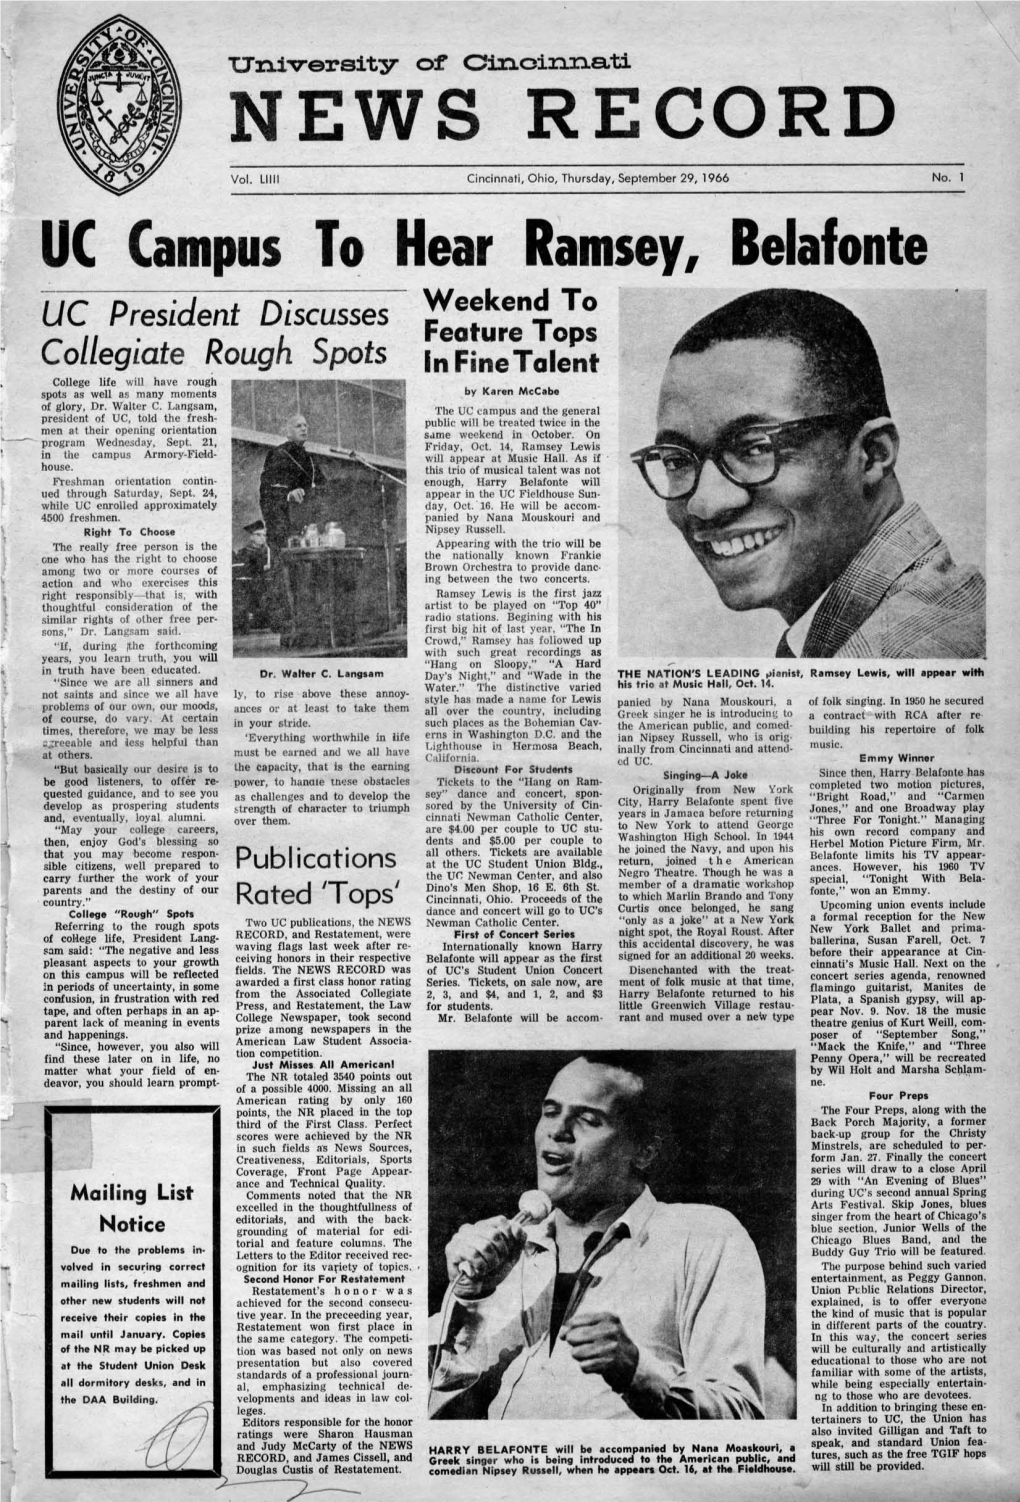 University of Cincinnati News Record. Thursday, September 29, 1966. Vol